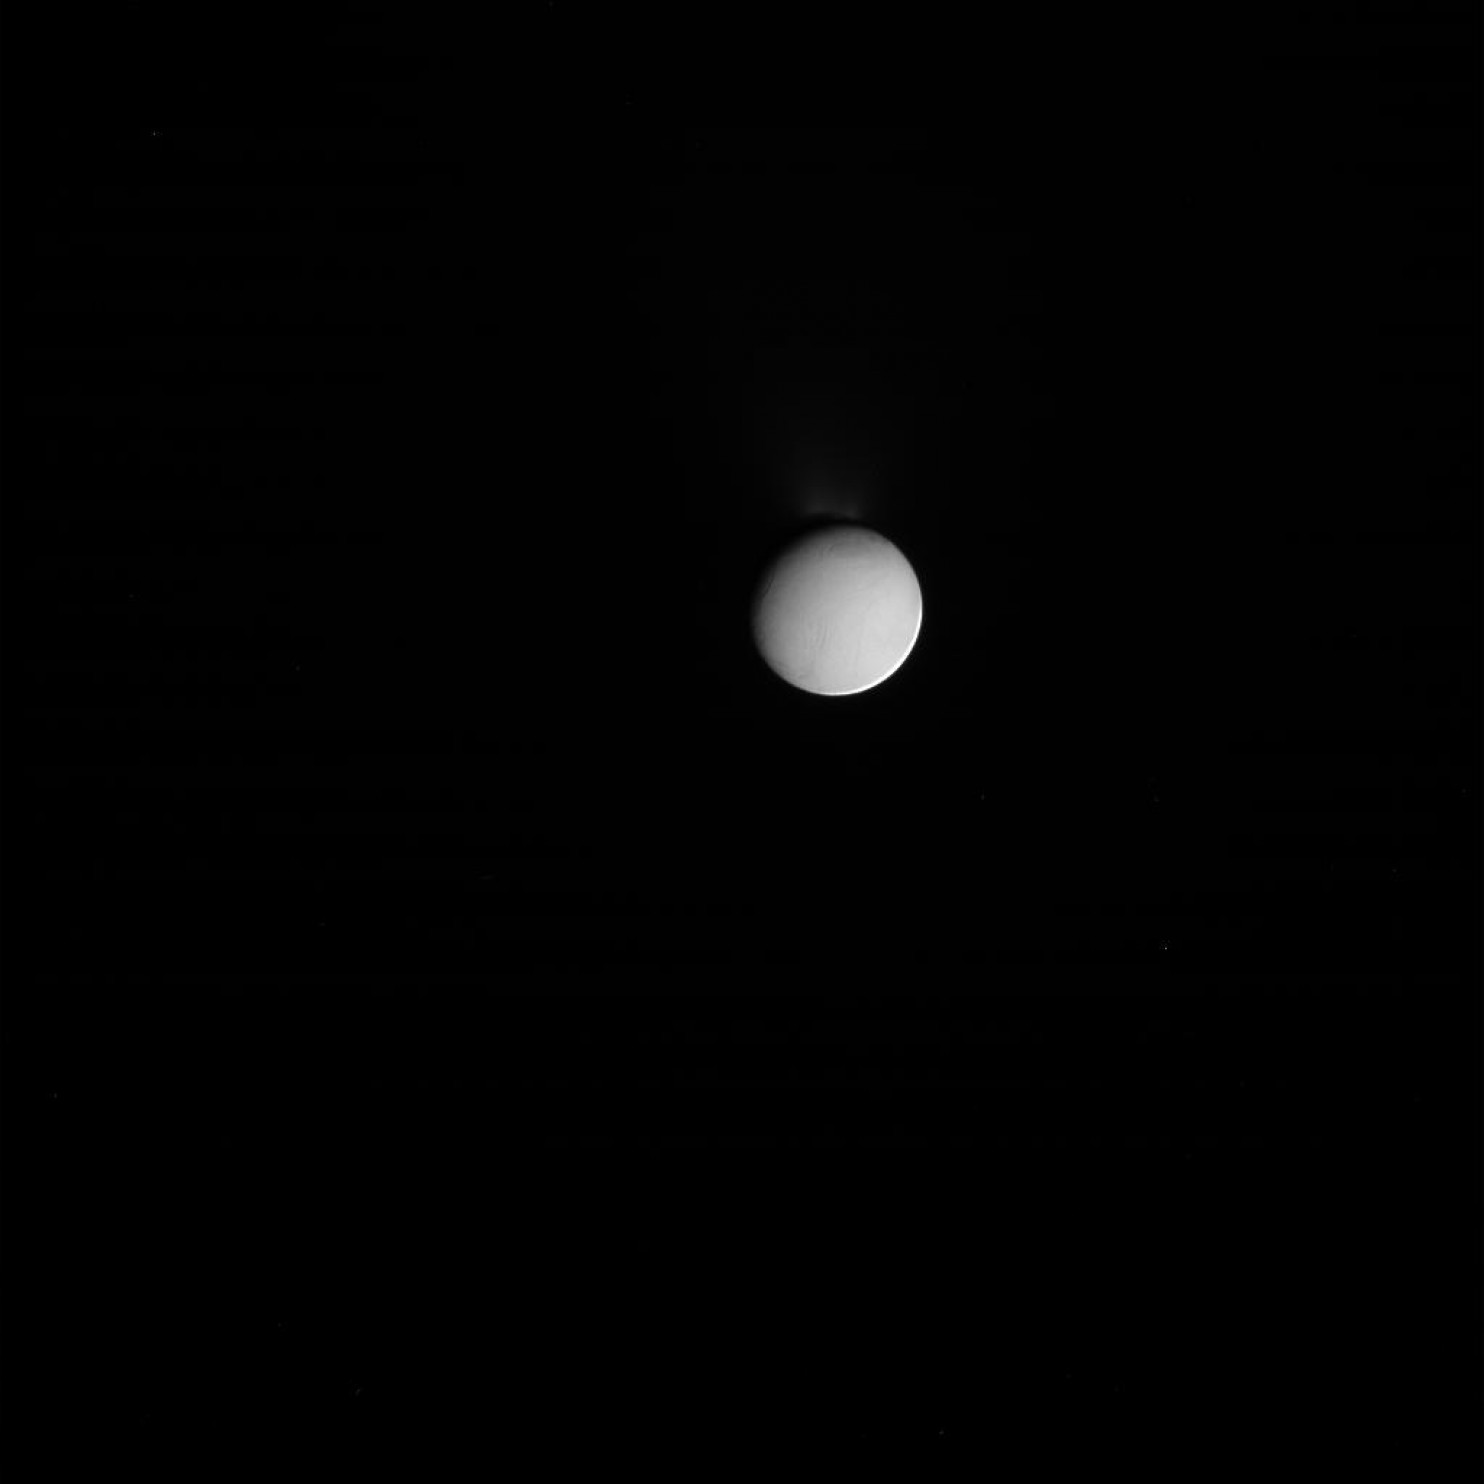 Encelado, la luna helada de Saturno.